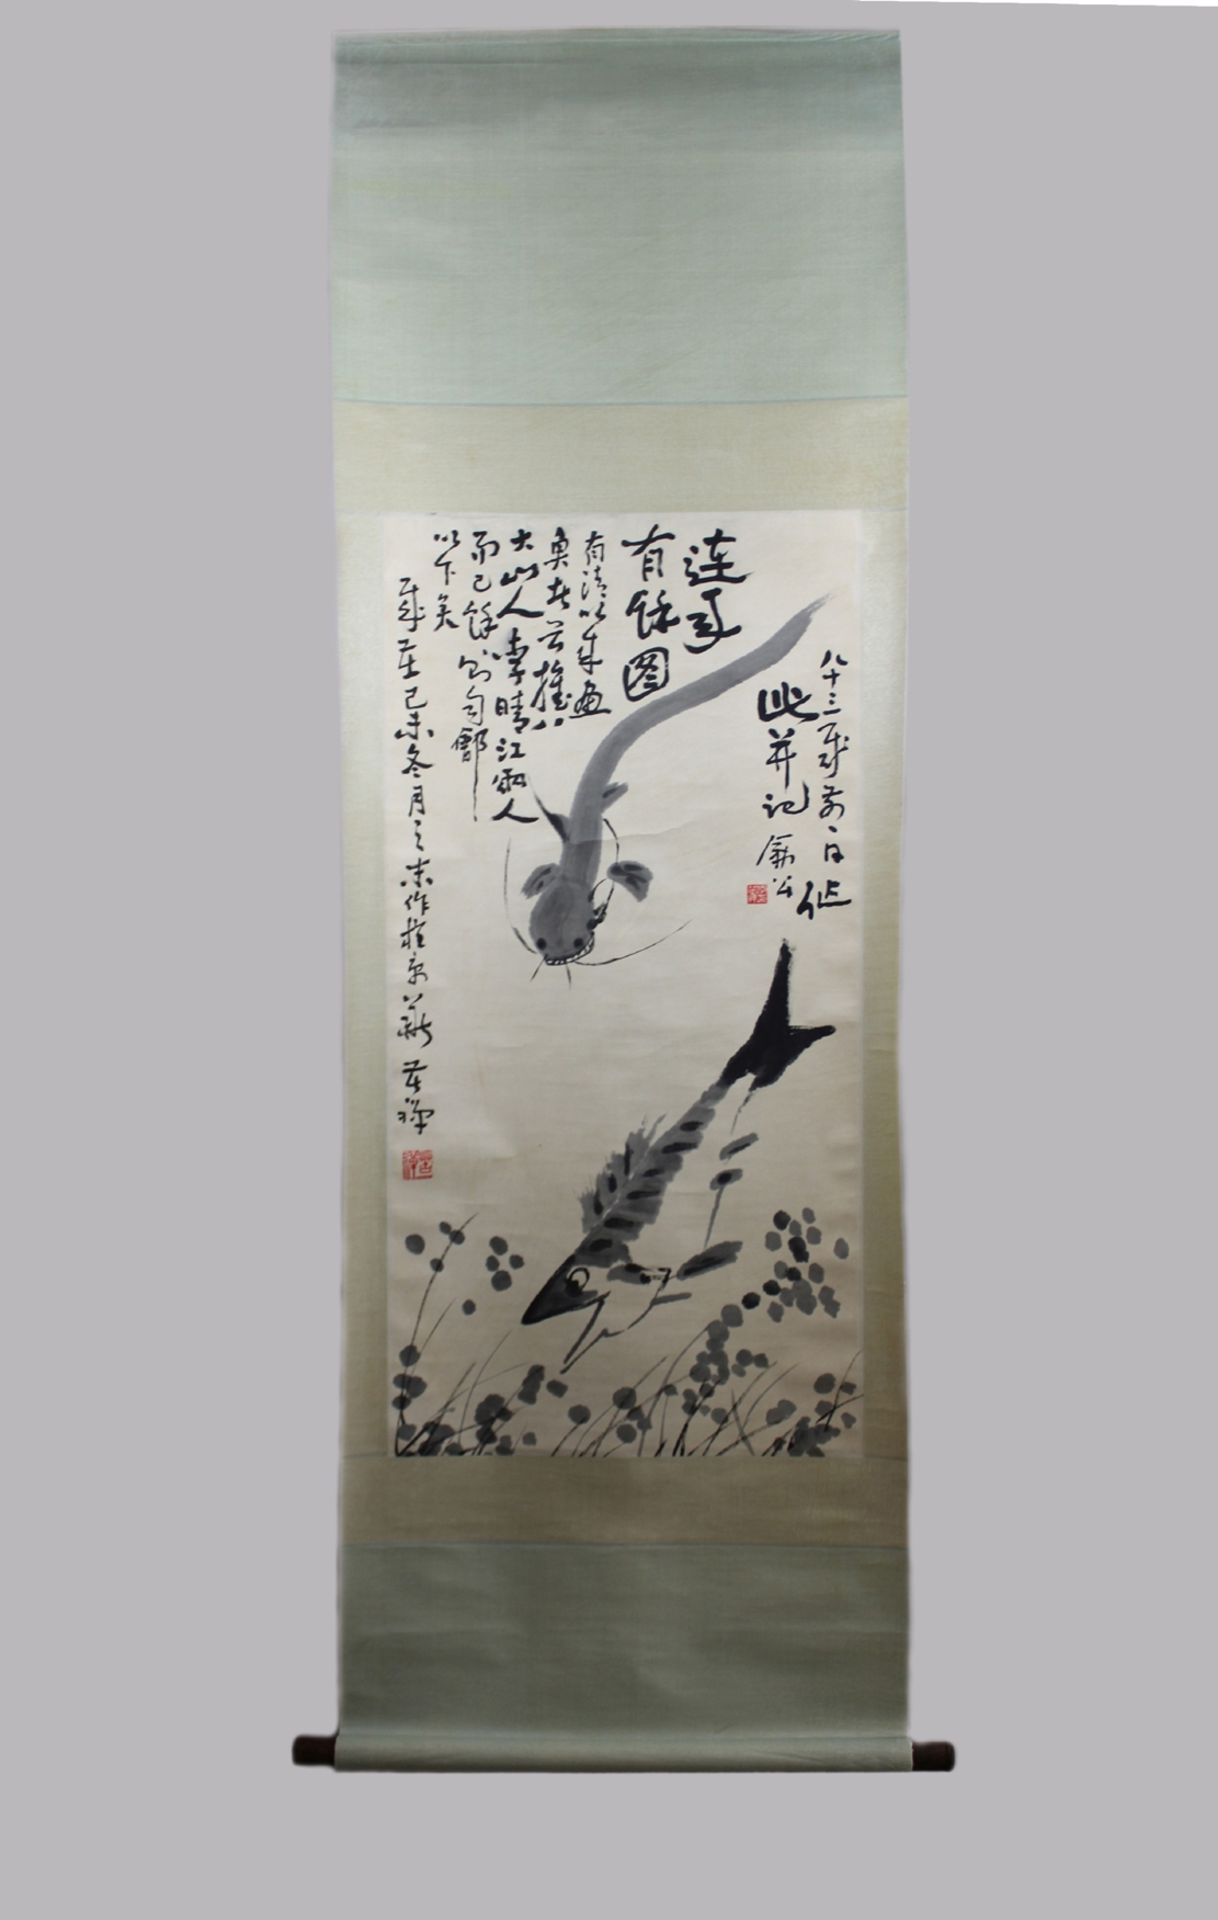 Li Kuchan (Chinesisch, 1899-1983), Rollbild China, Fisch, Papier und Tusche, gestempelt, verso sign